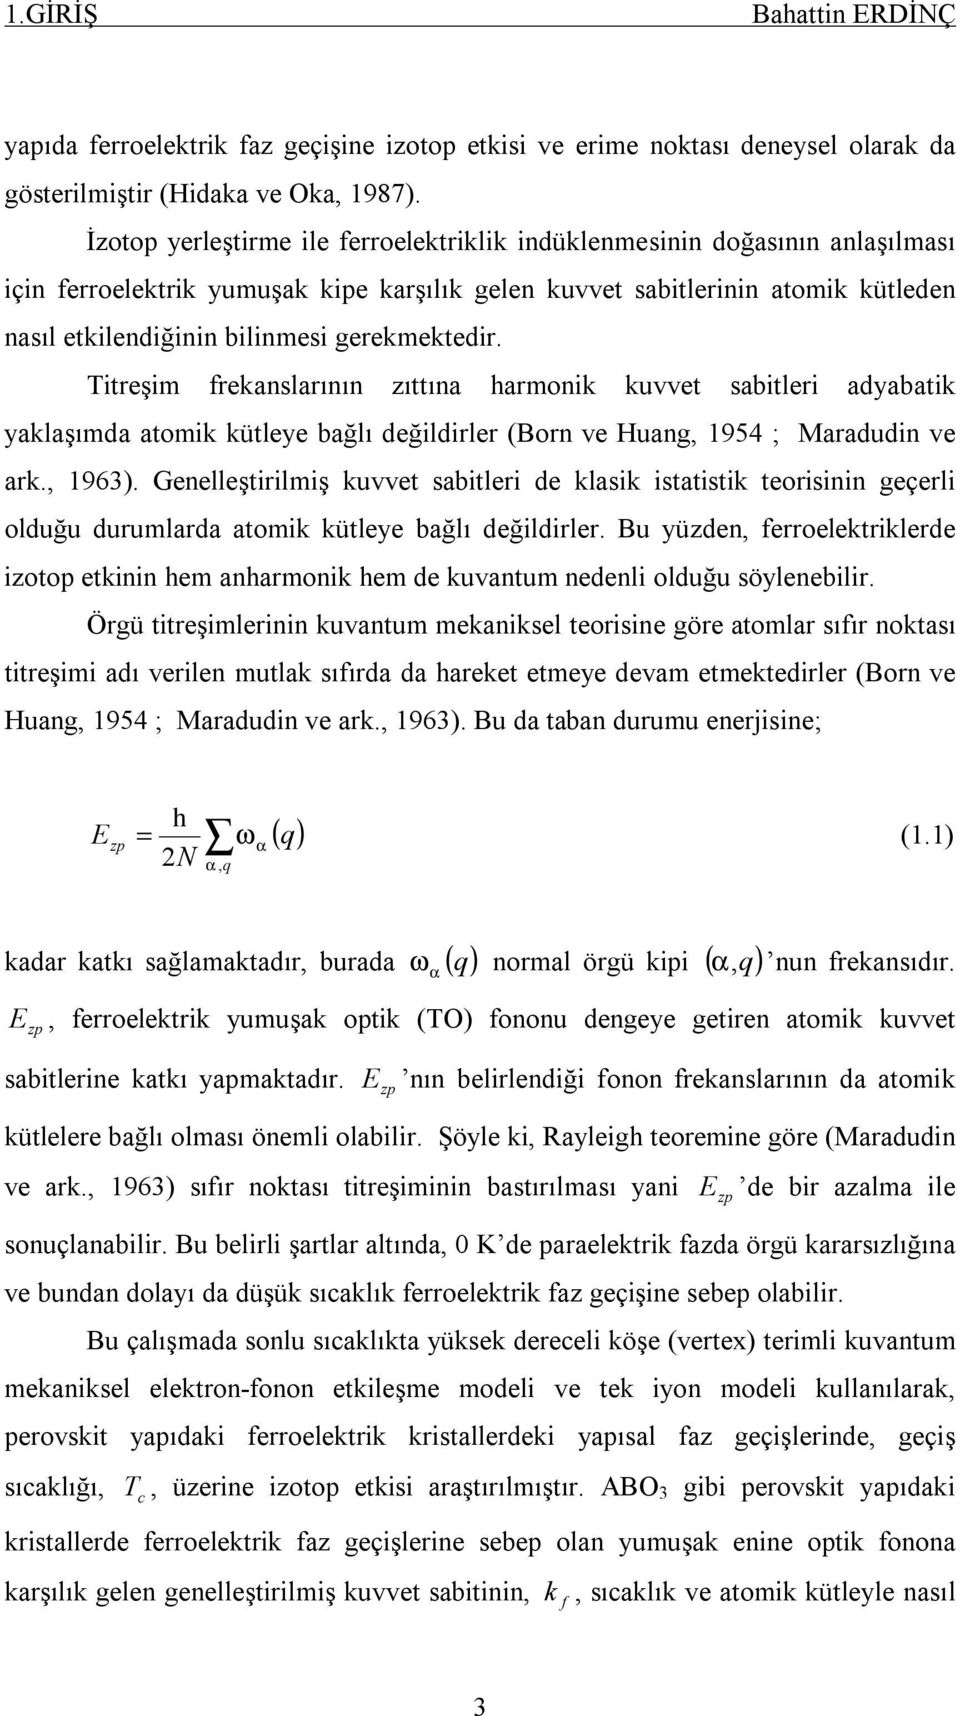 treşm freanslarının zıttına harmon uvvet sabtler adyabat yalaşımda atom ütleye bağlı değldrler (Born ve Huang, 954 ; Maradudn ve ar., 963).